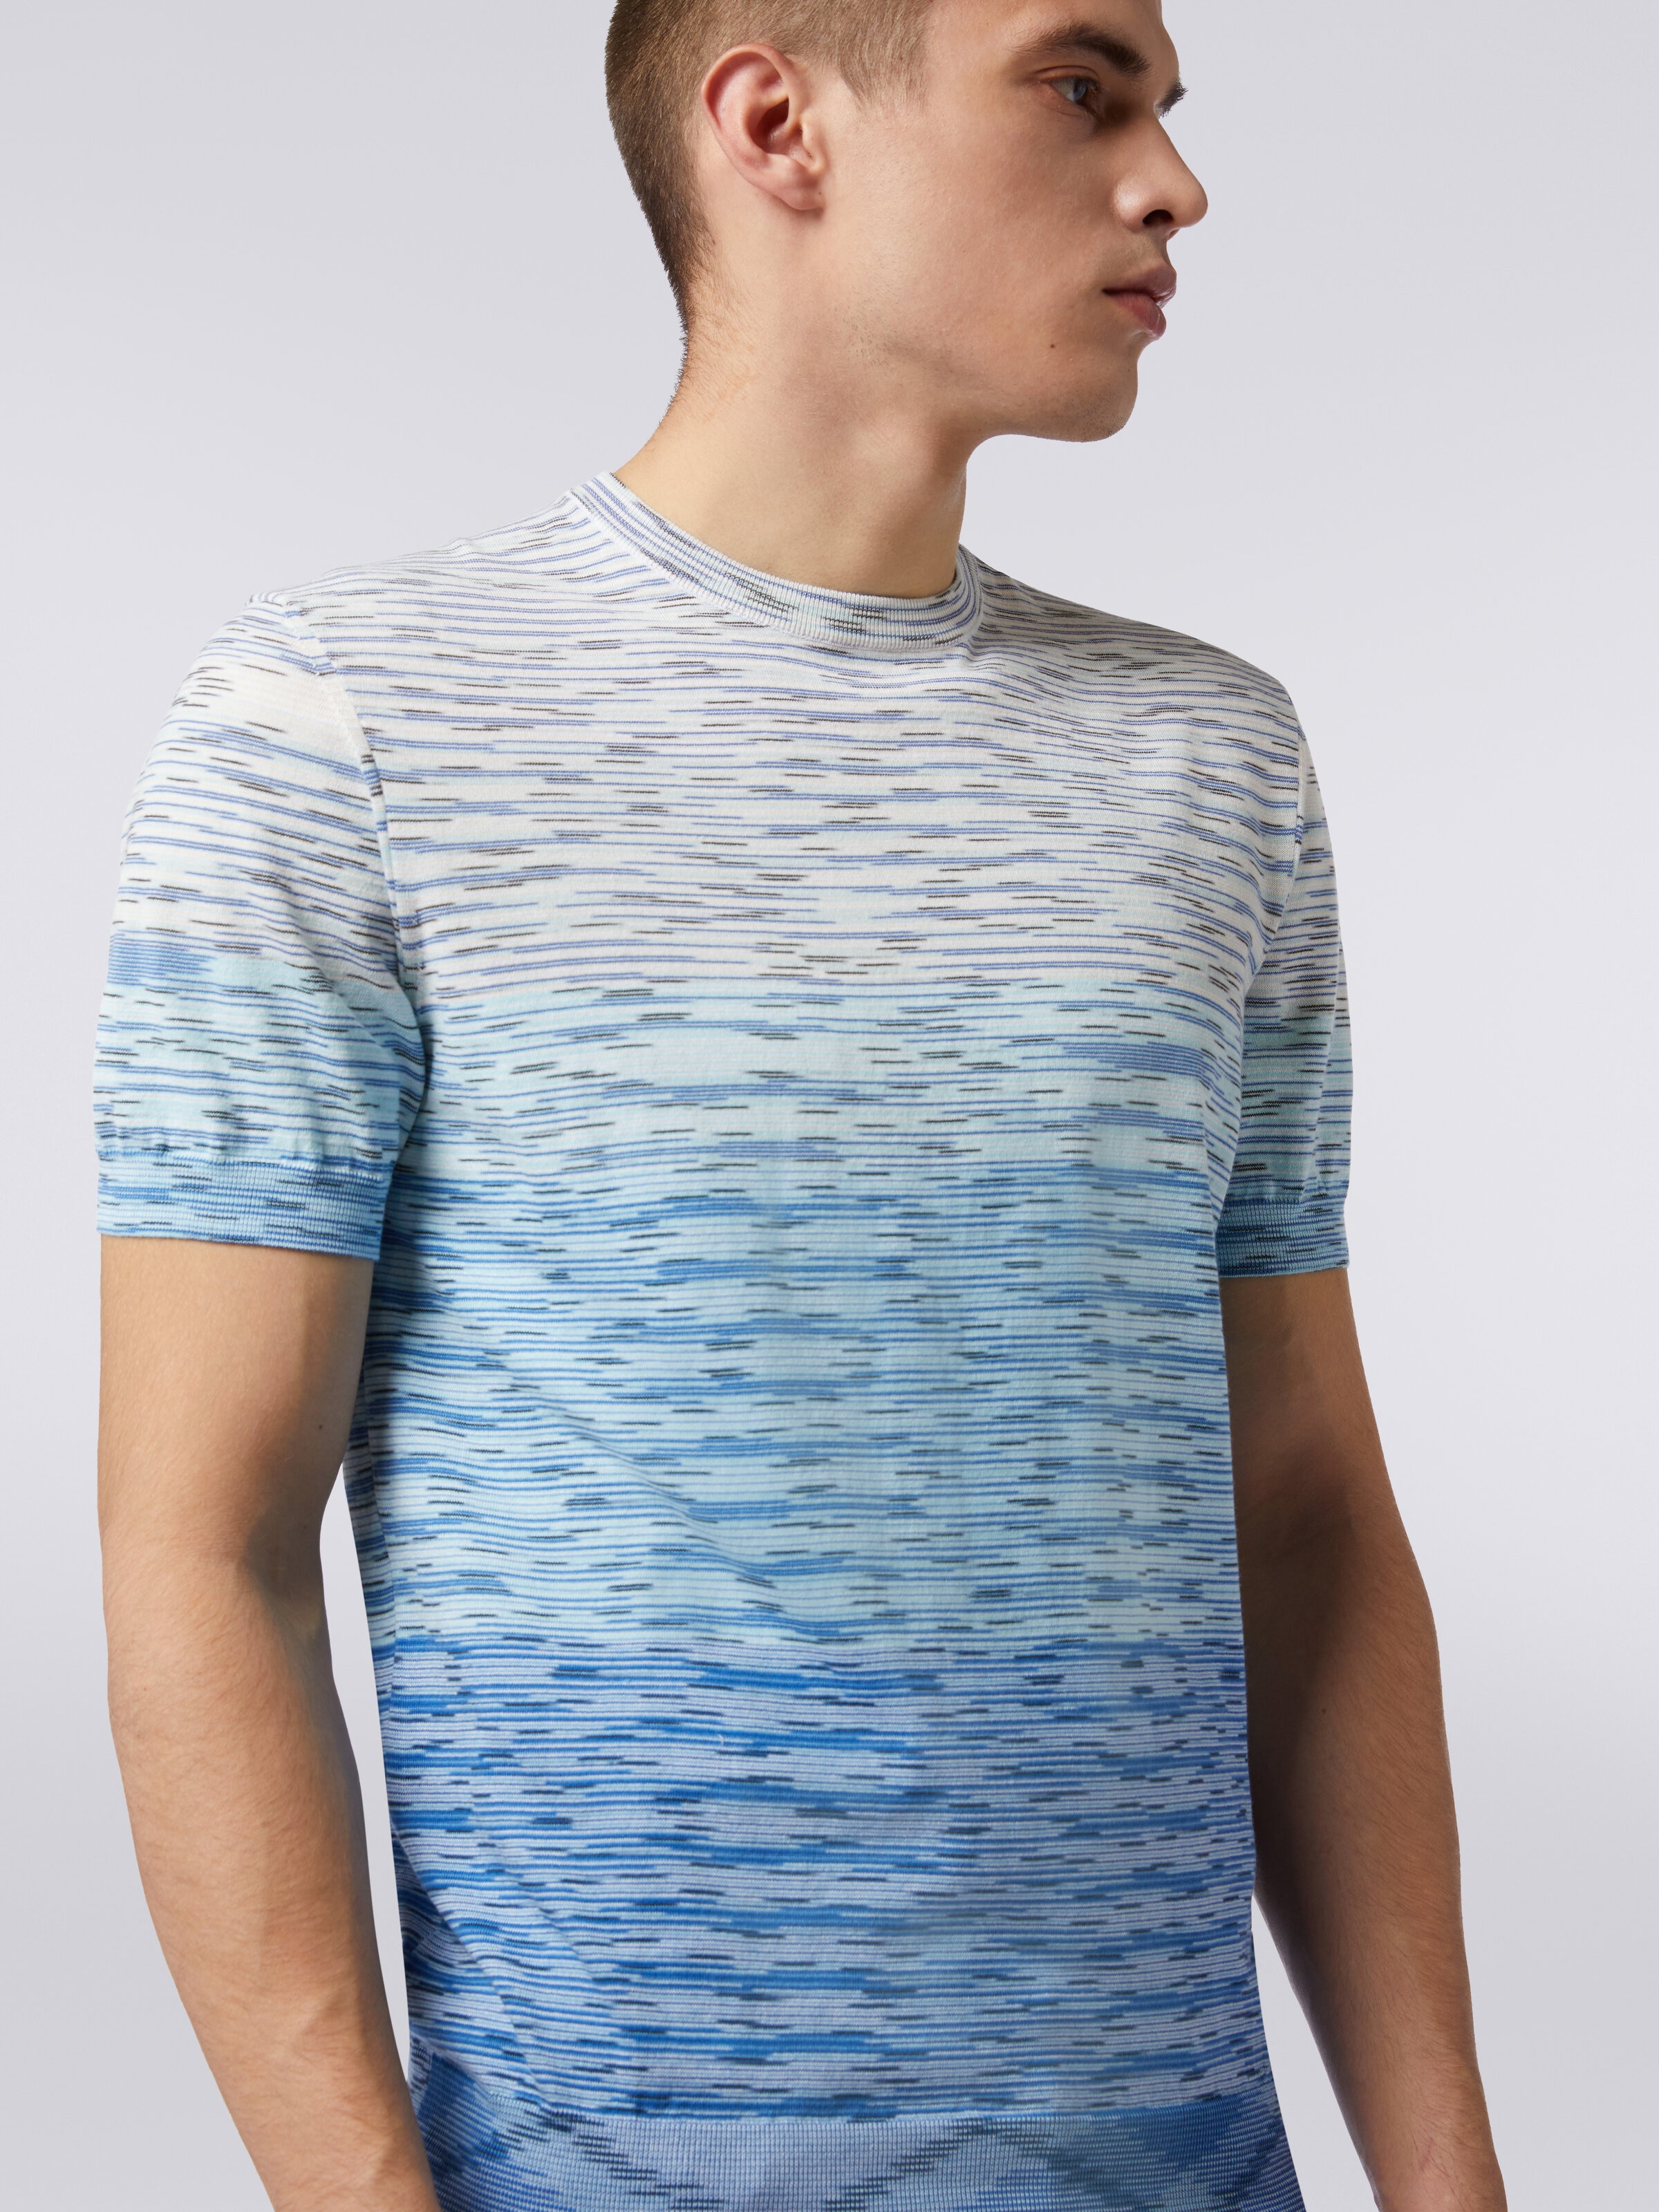 Rundhals-T-Shirt aus Baumwolle in Flammgarnoptik mit Dégradé-Effekt, Mehrfarbig  - 4